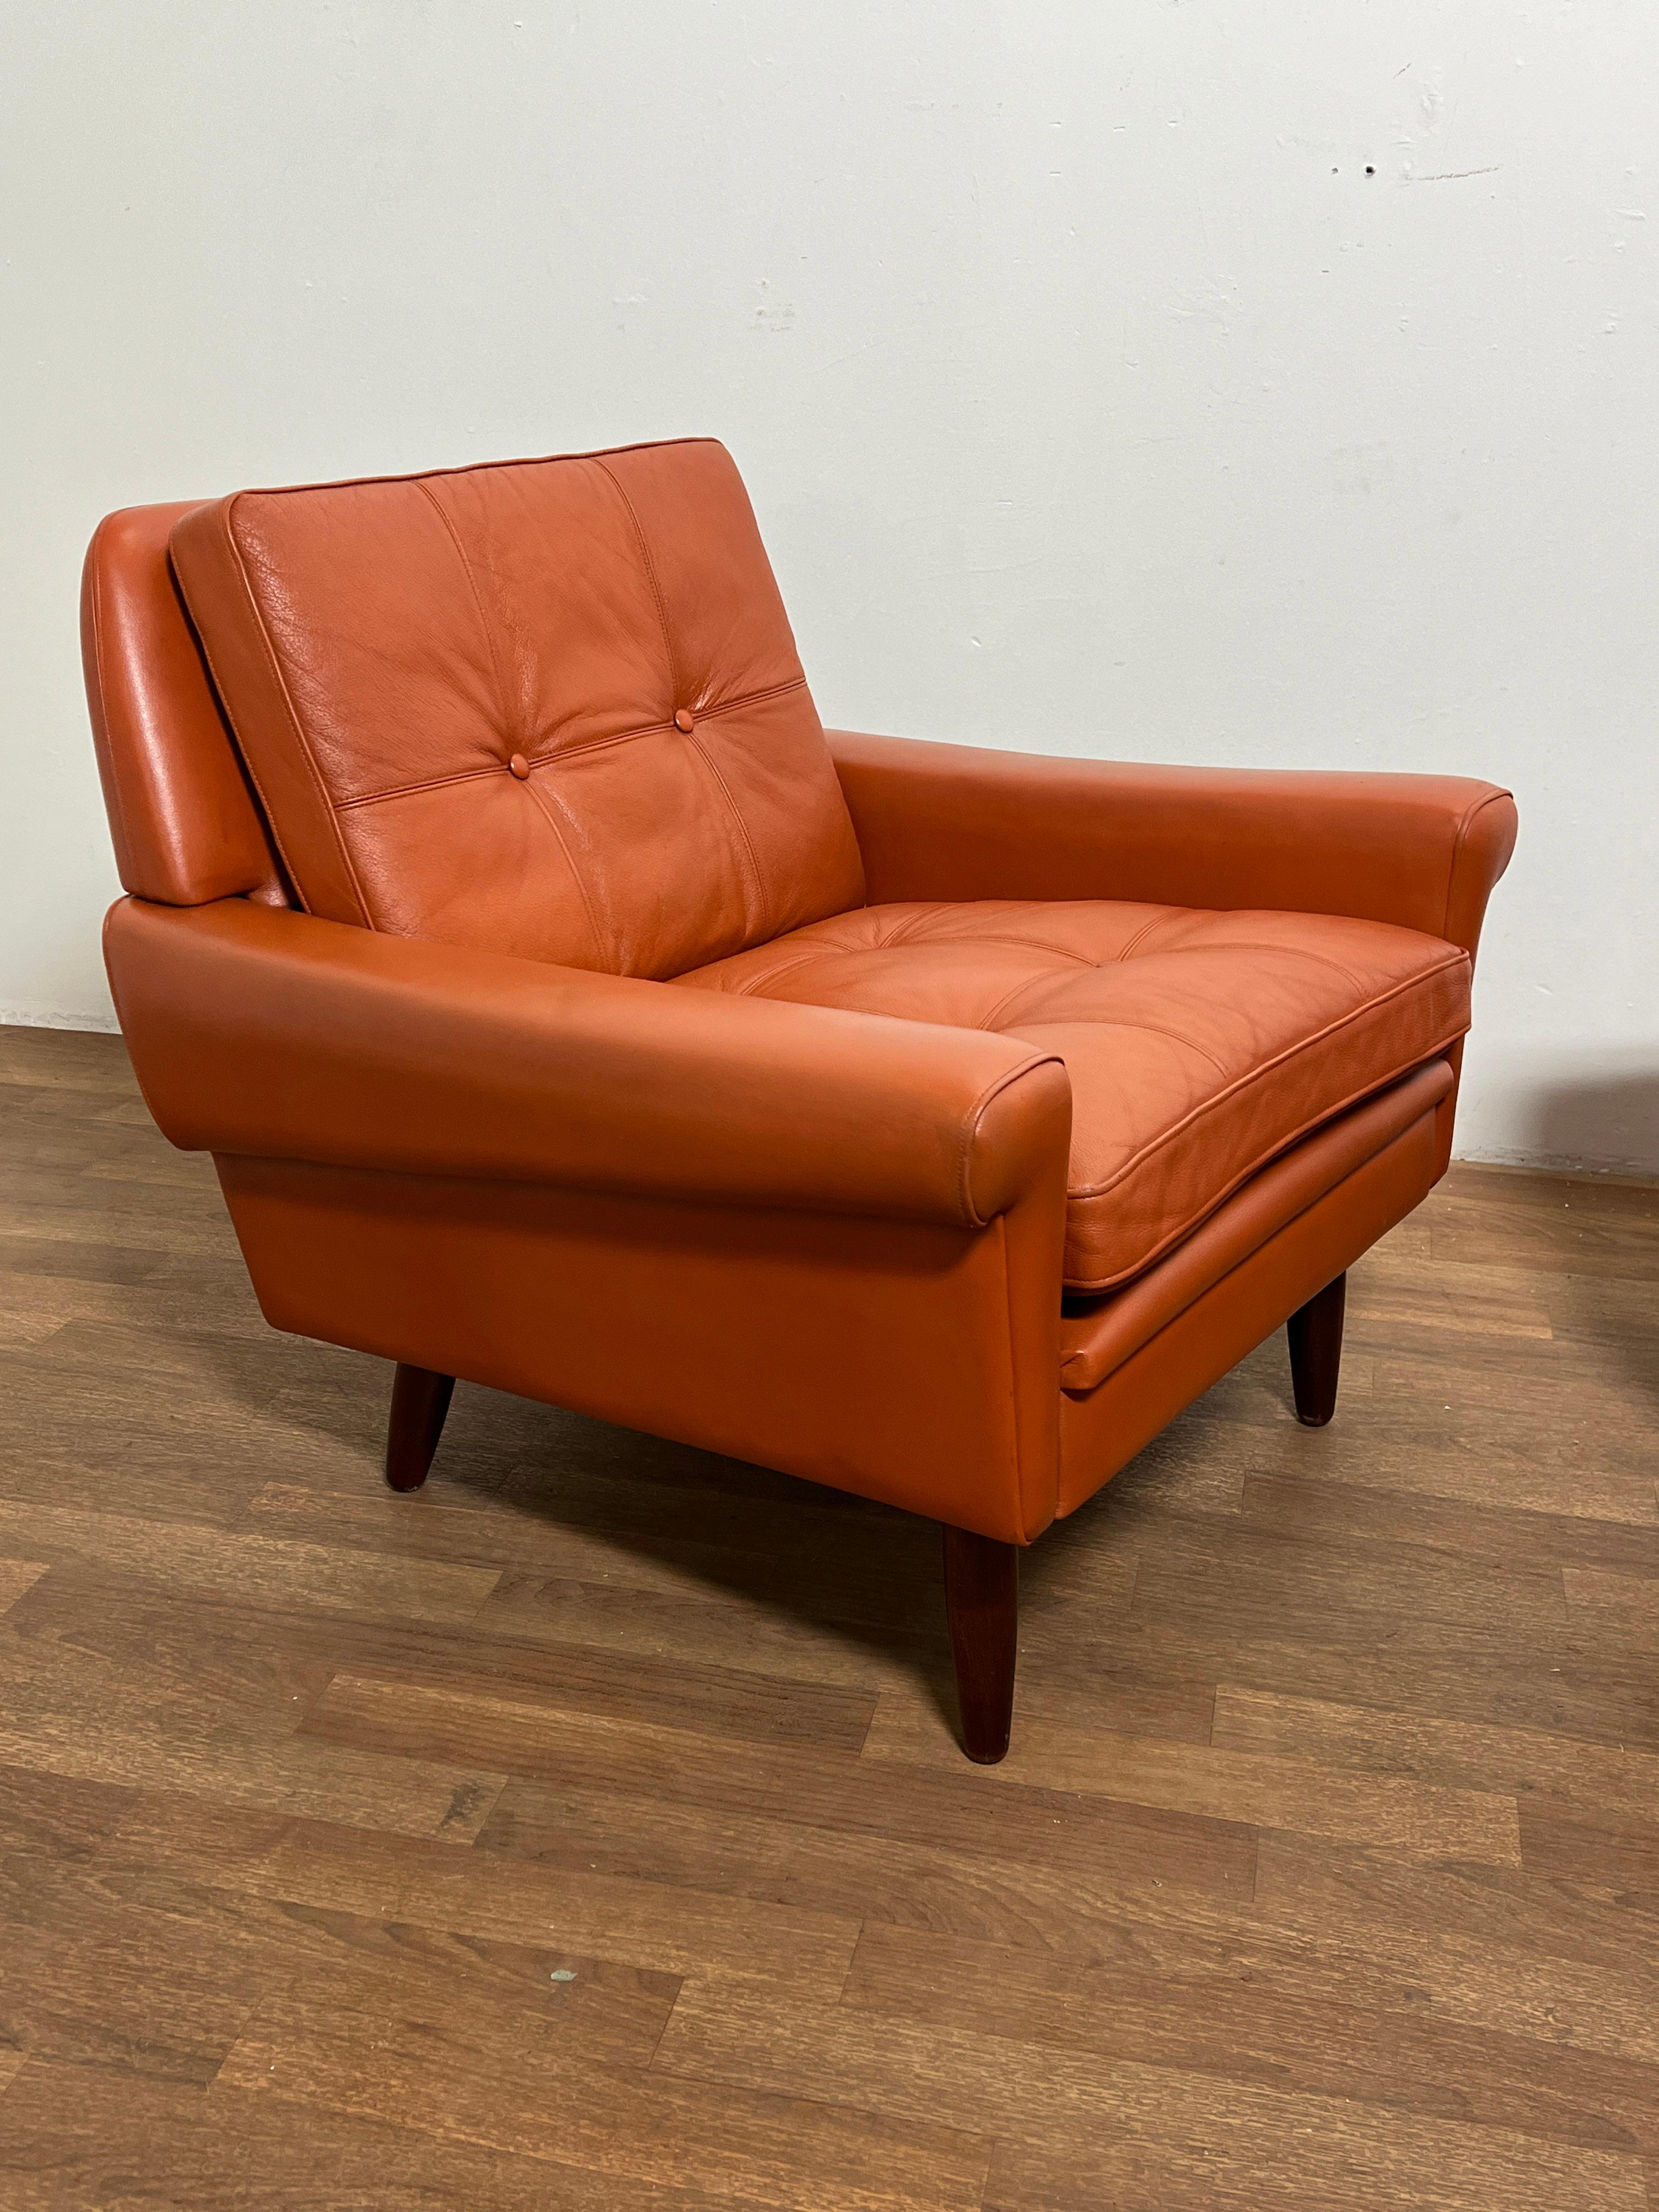 Paire de chaises longues des années 1960 en cuir cognac d'origine, fabriquées par Svend Skipper Mobelfabrik, Danemark.